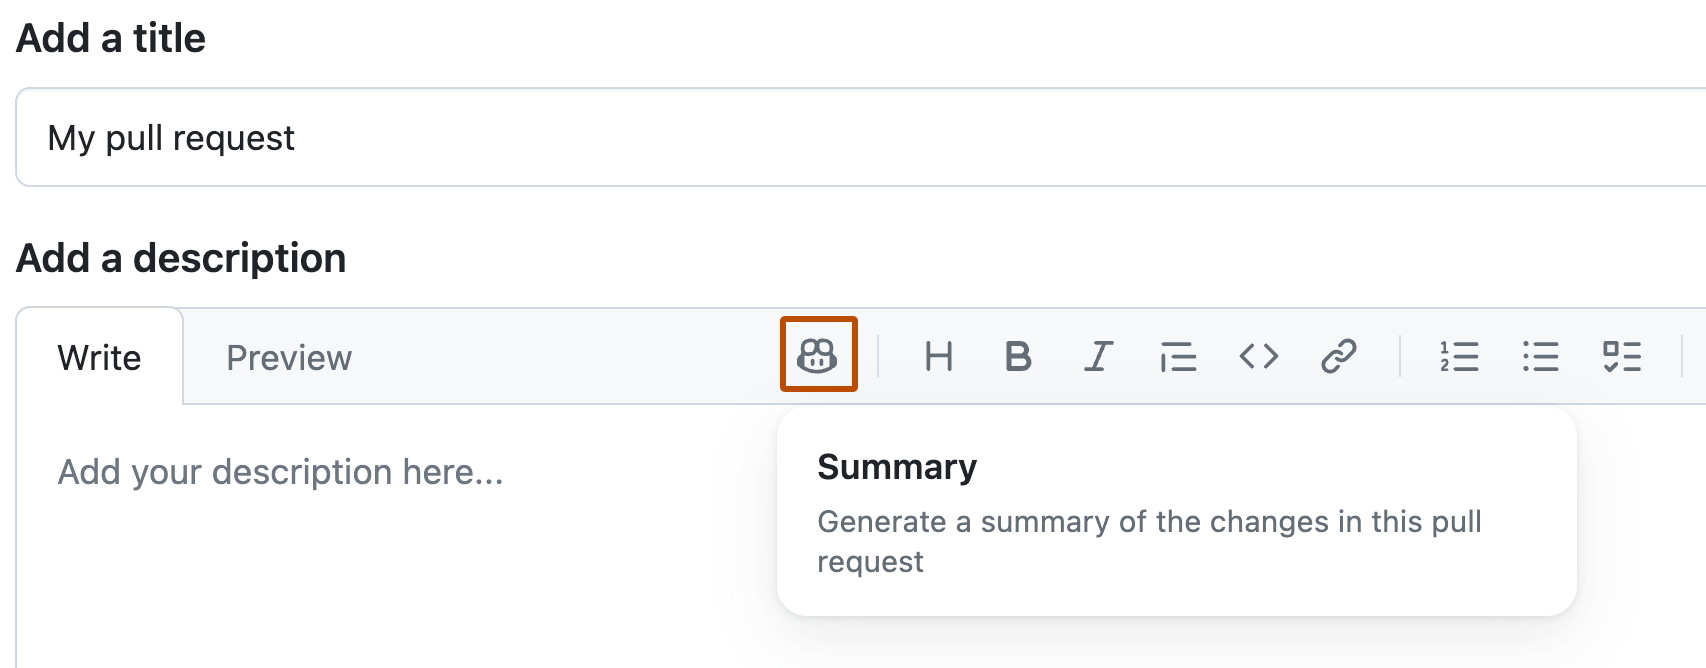 Captura de pantalla del formulario para crear una solicitud de incorporación de cambios. En el encabezado del campo "Descripción", se resalta un icono de Copilot en color naranja, y aparece un cuadro con el comando "Resumen".